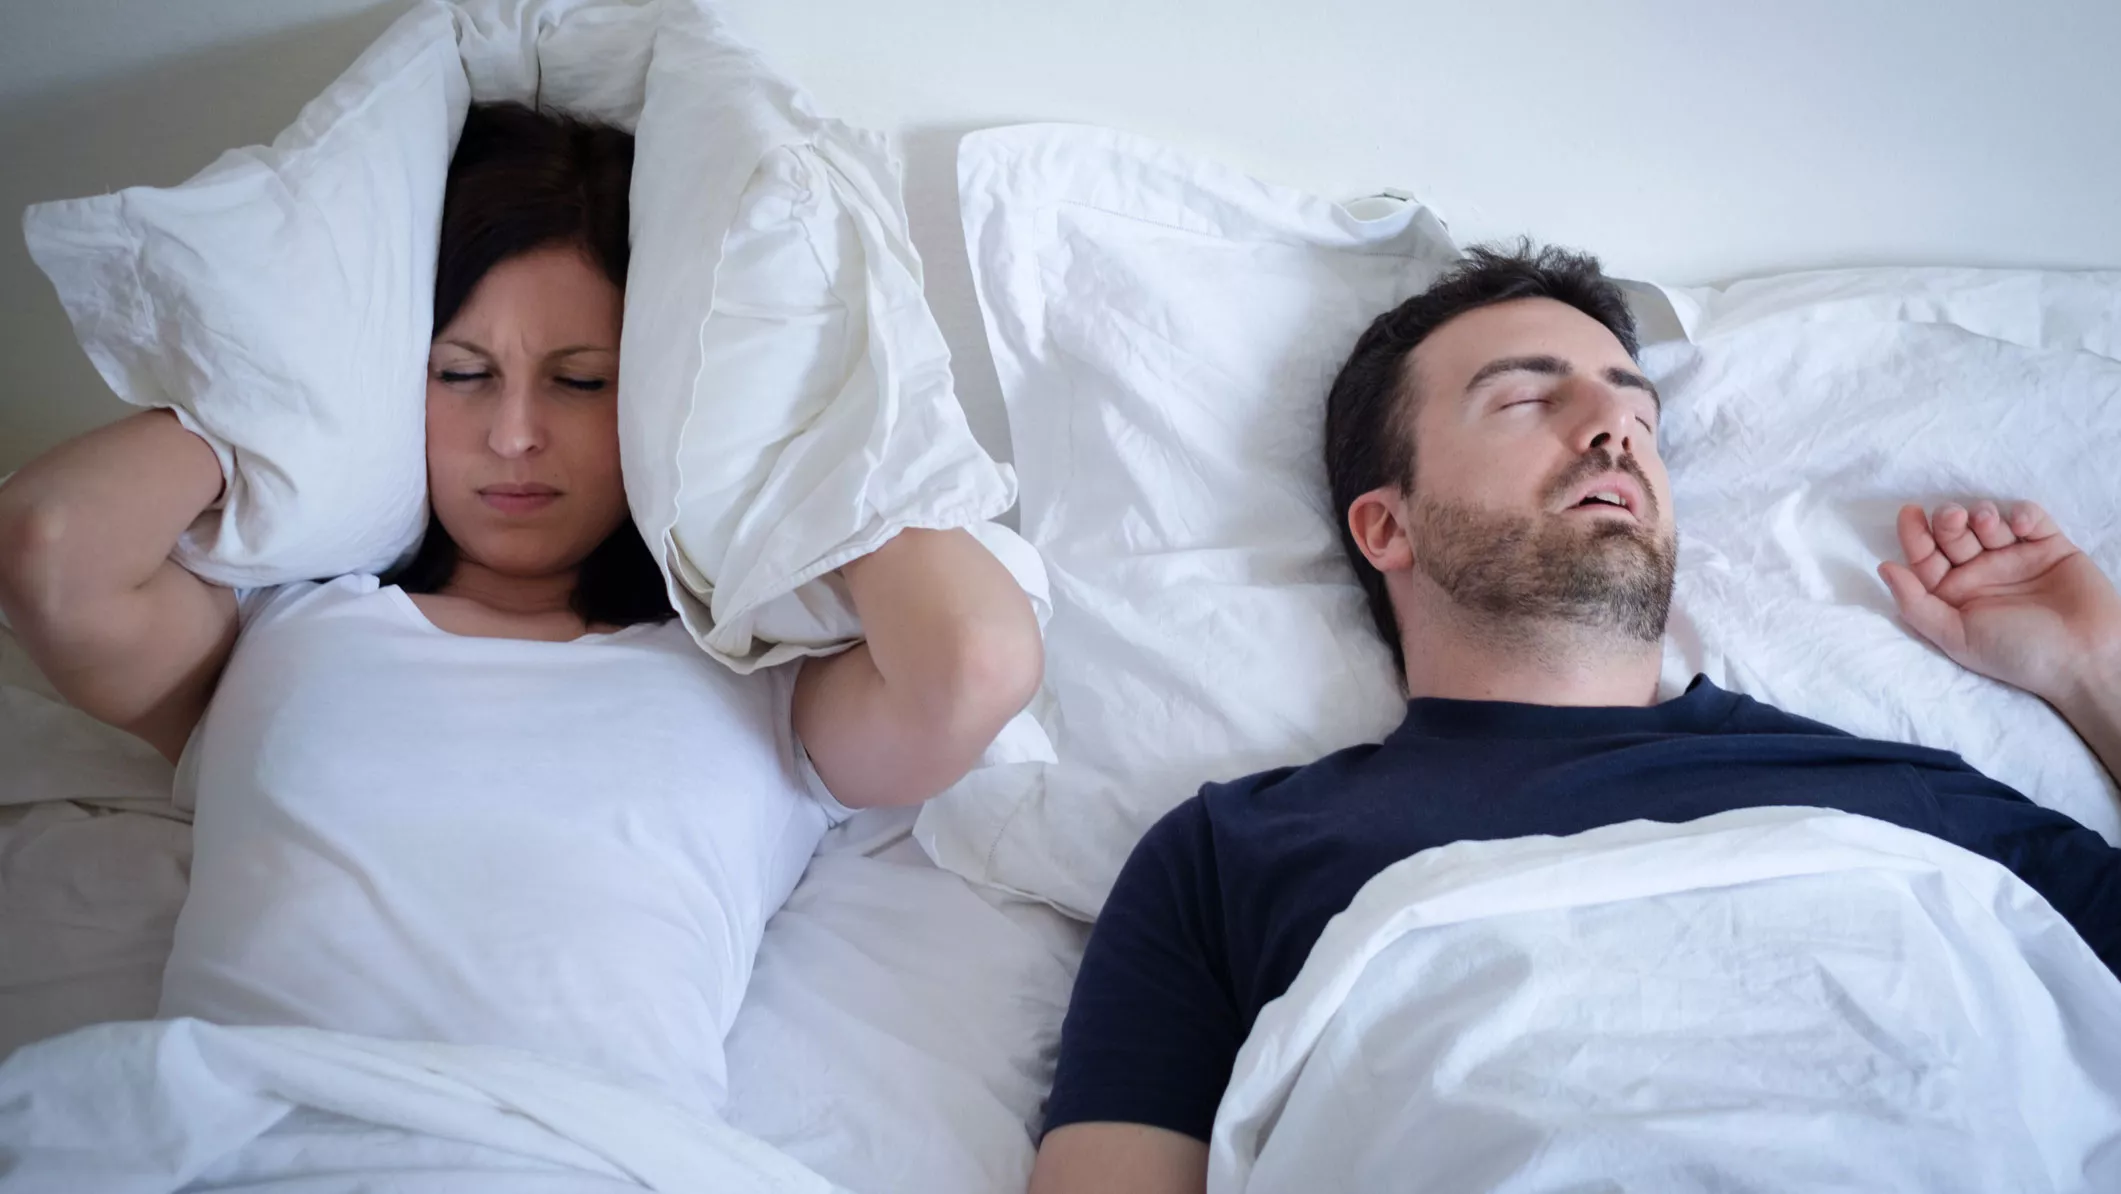 Nainen ja mies nukkumassa, mies kuorsaa, nainen pitää tyynyä korvillaan ja miettii, miten kuorsaaminen saataisiin loppumaan.